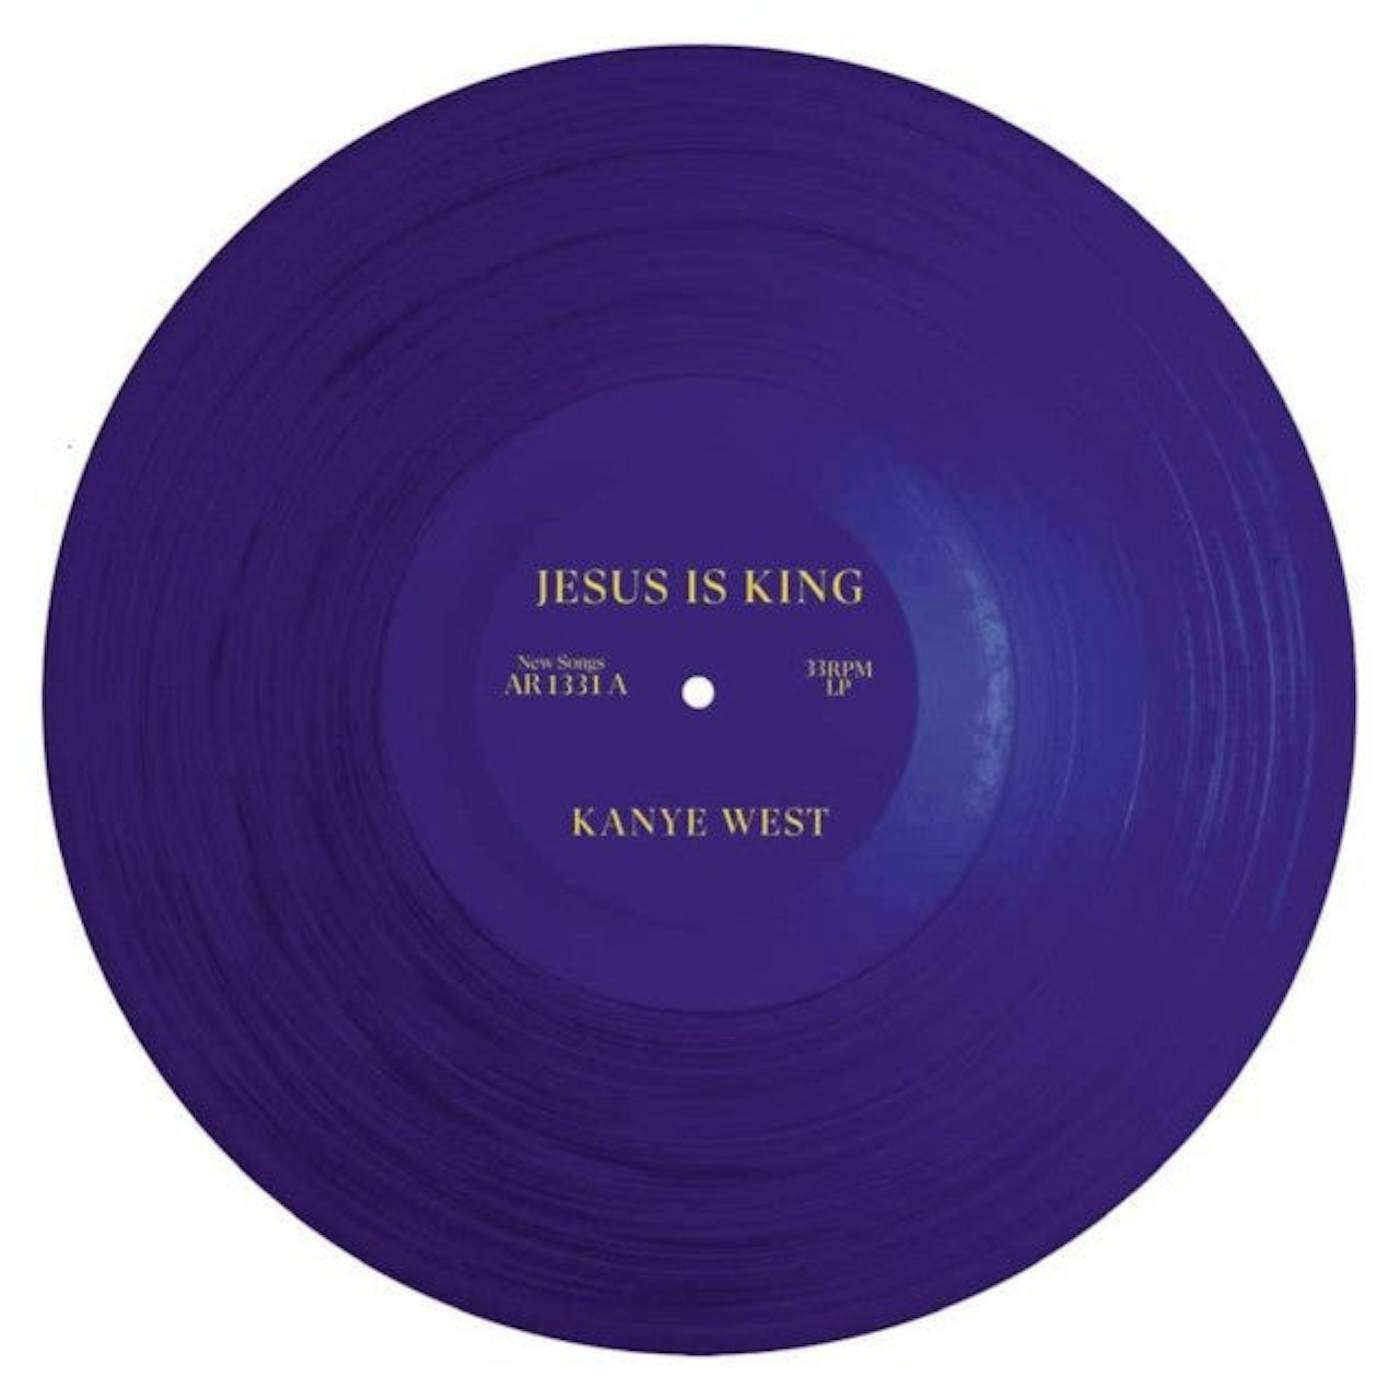 Kanye West - Jesus is King CD